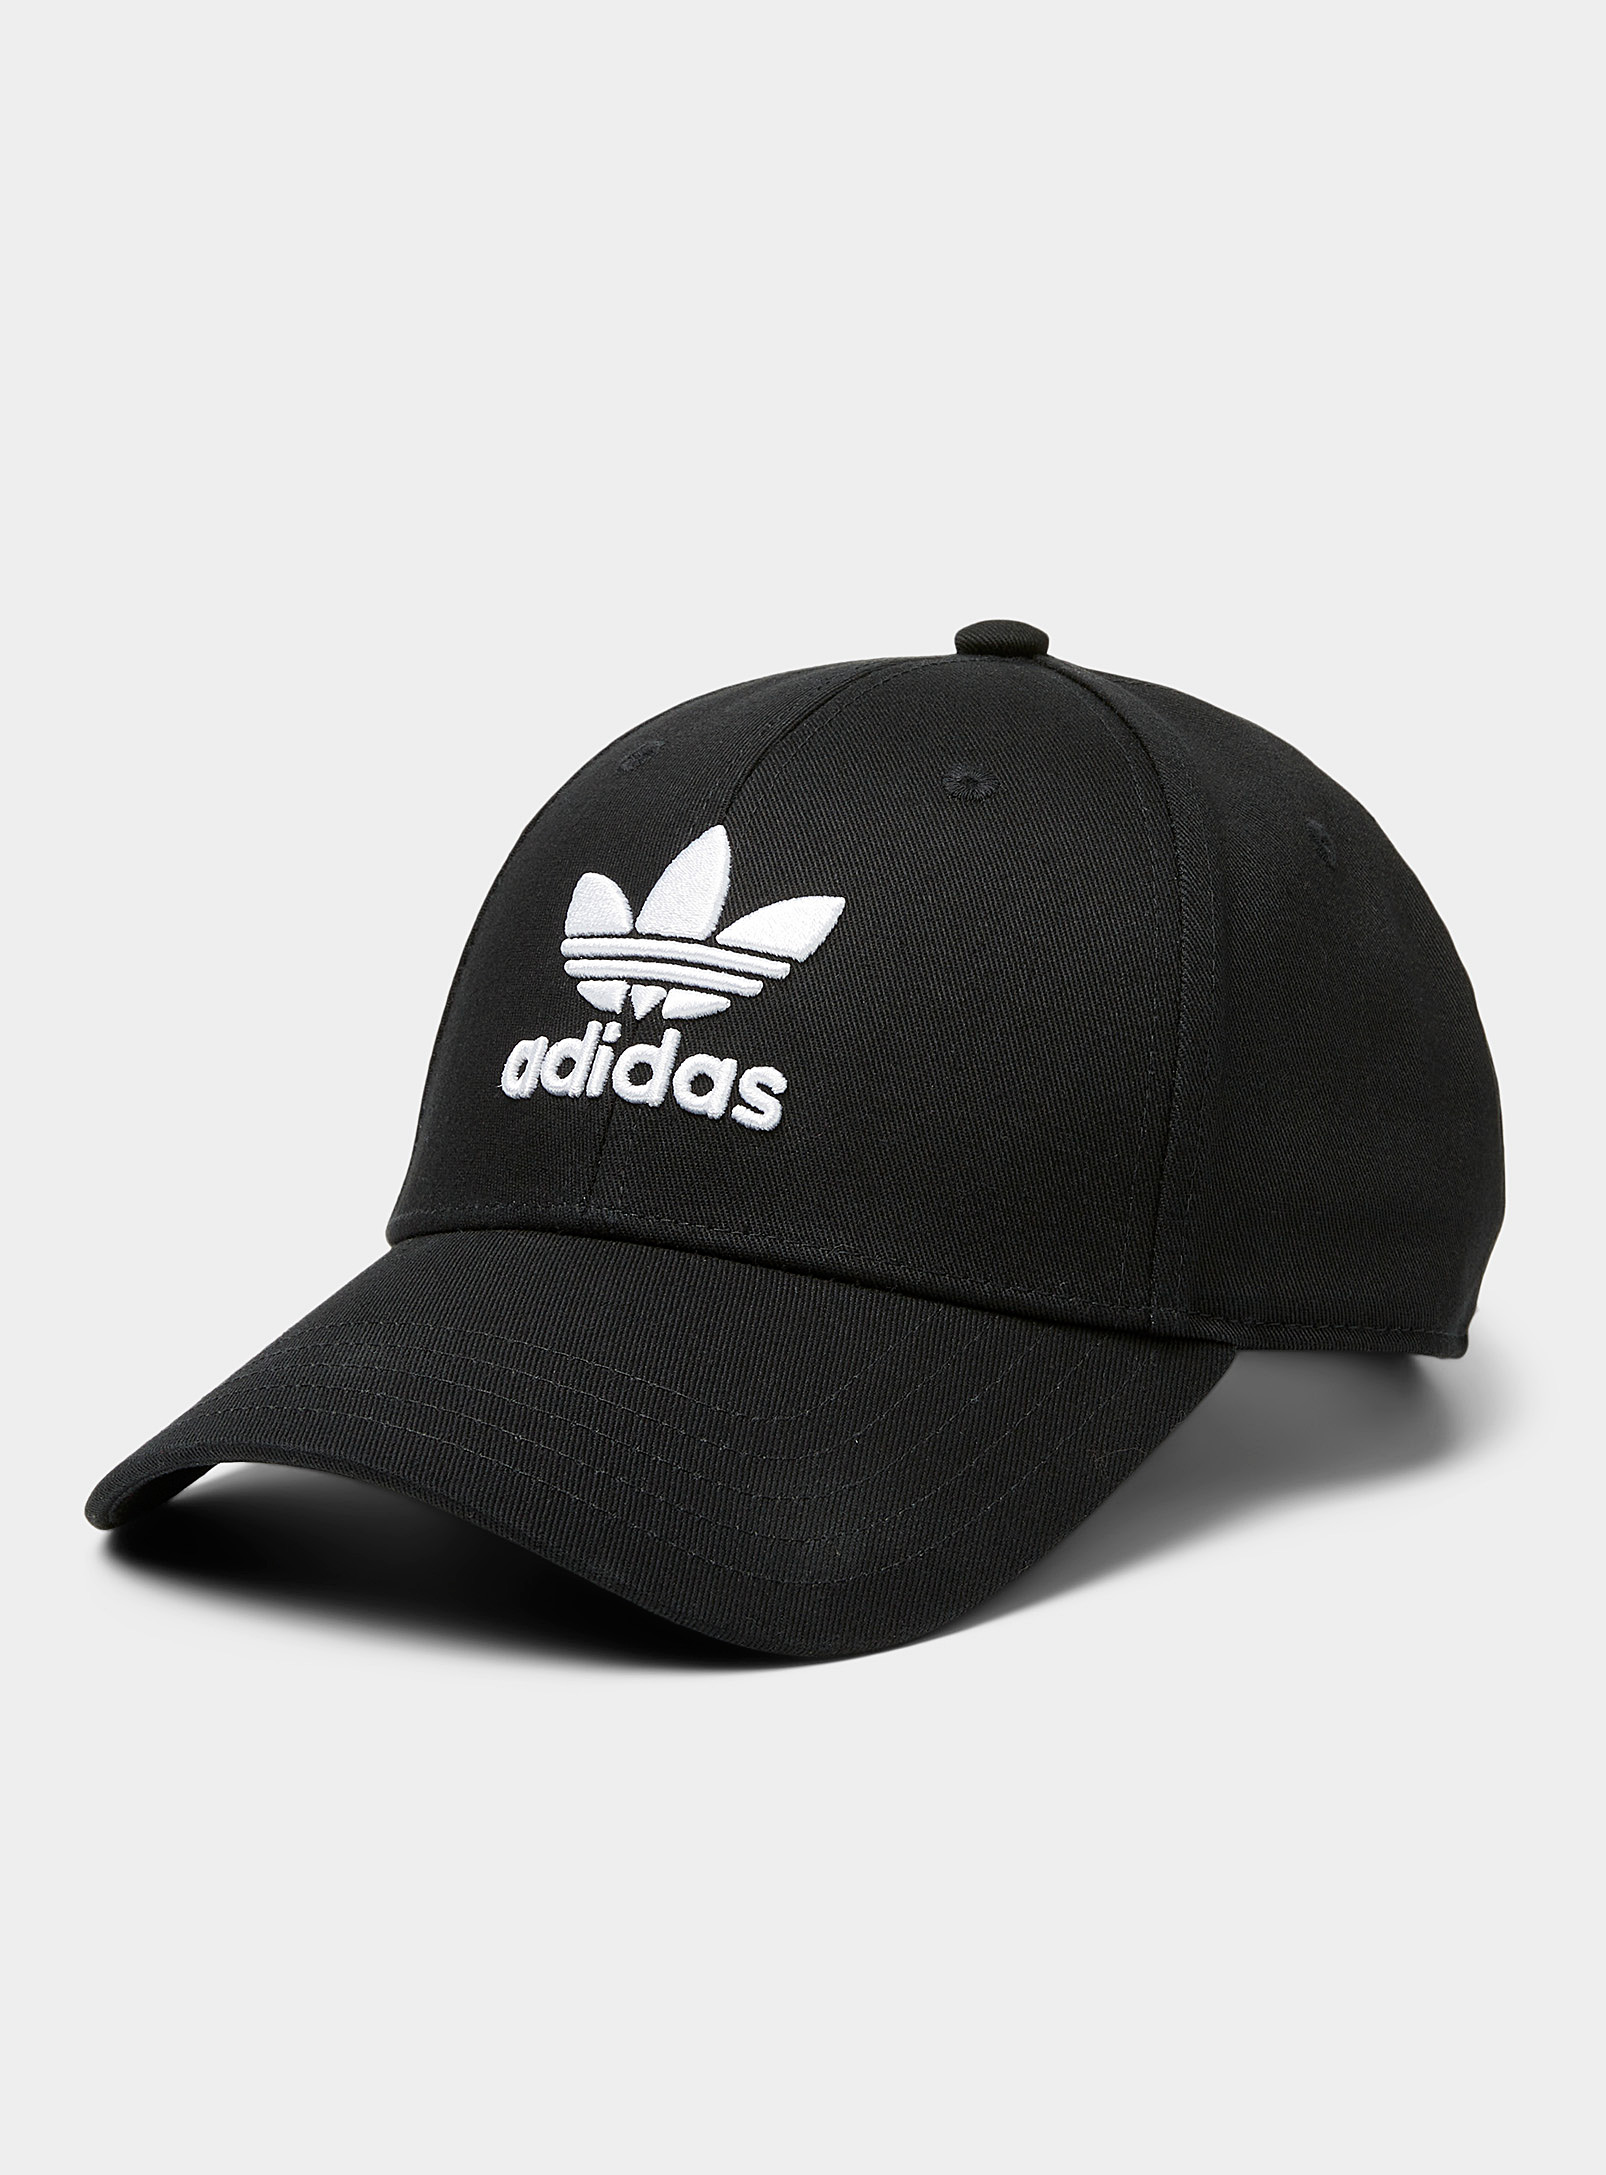 Adidas Originals - Men's Black Trefoil logo cap